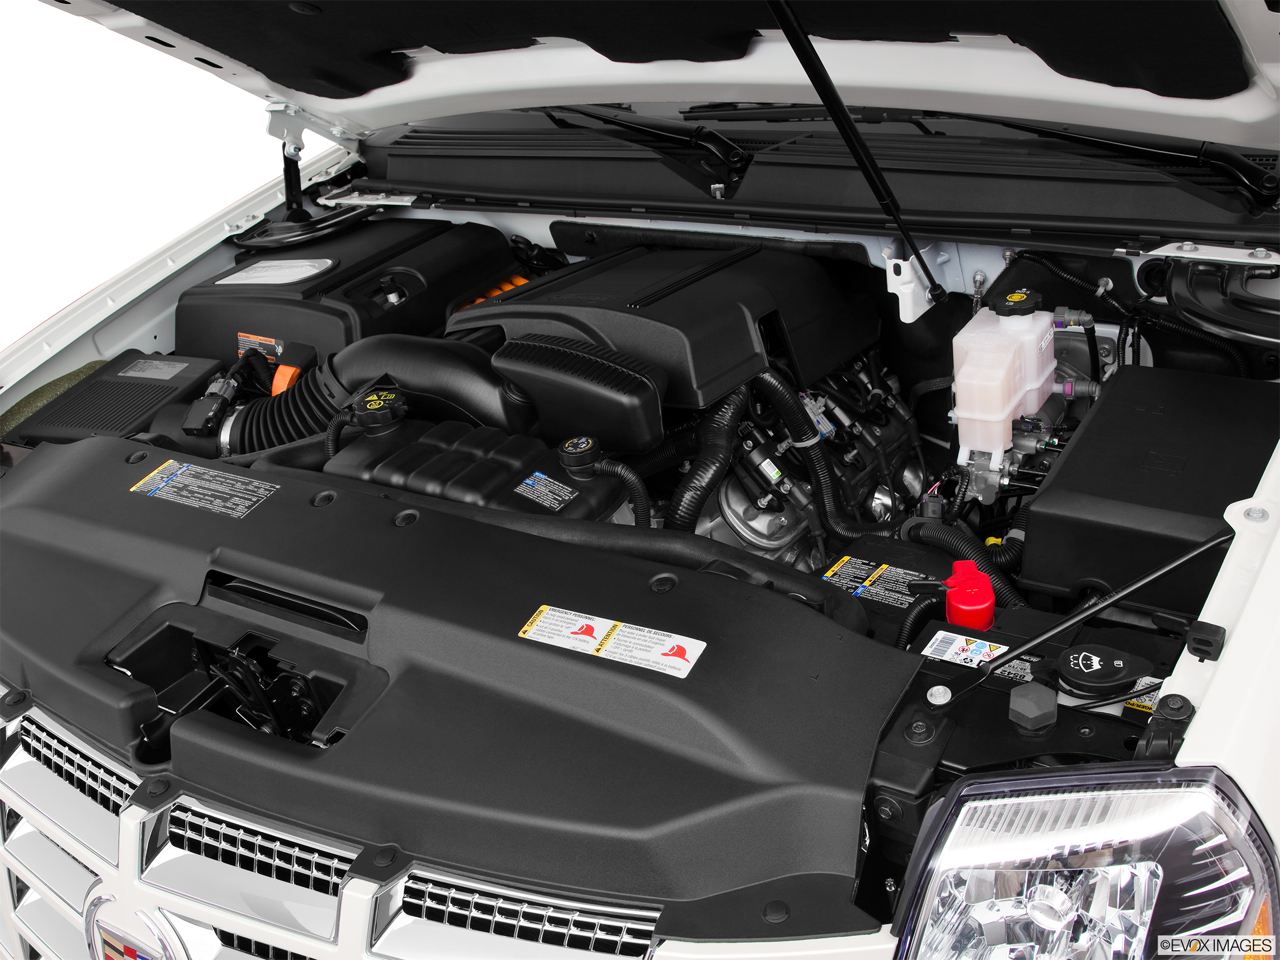 2011 Cadillac Escalade Hybrid Base Engine. 